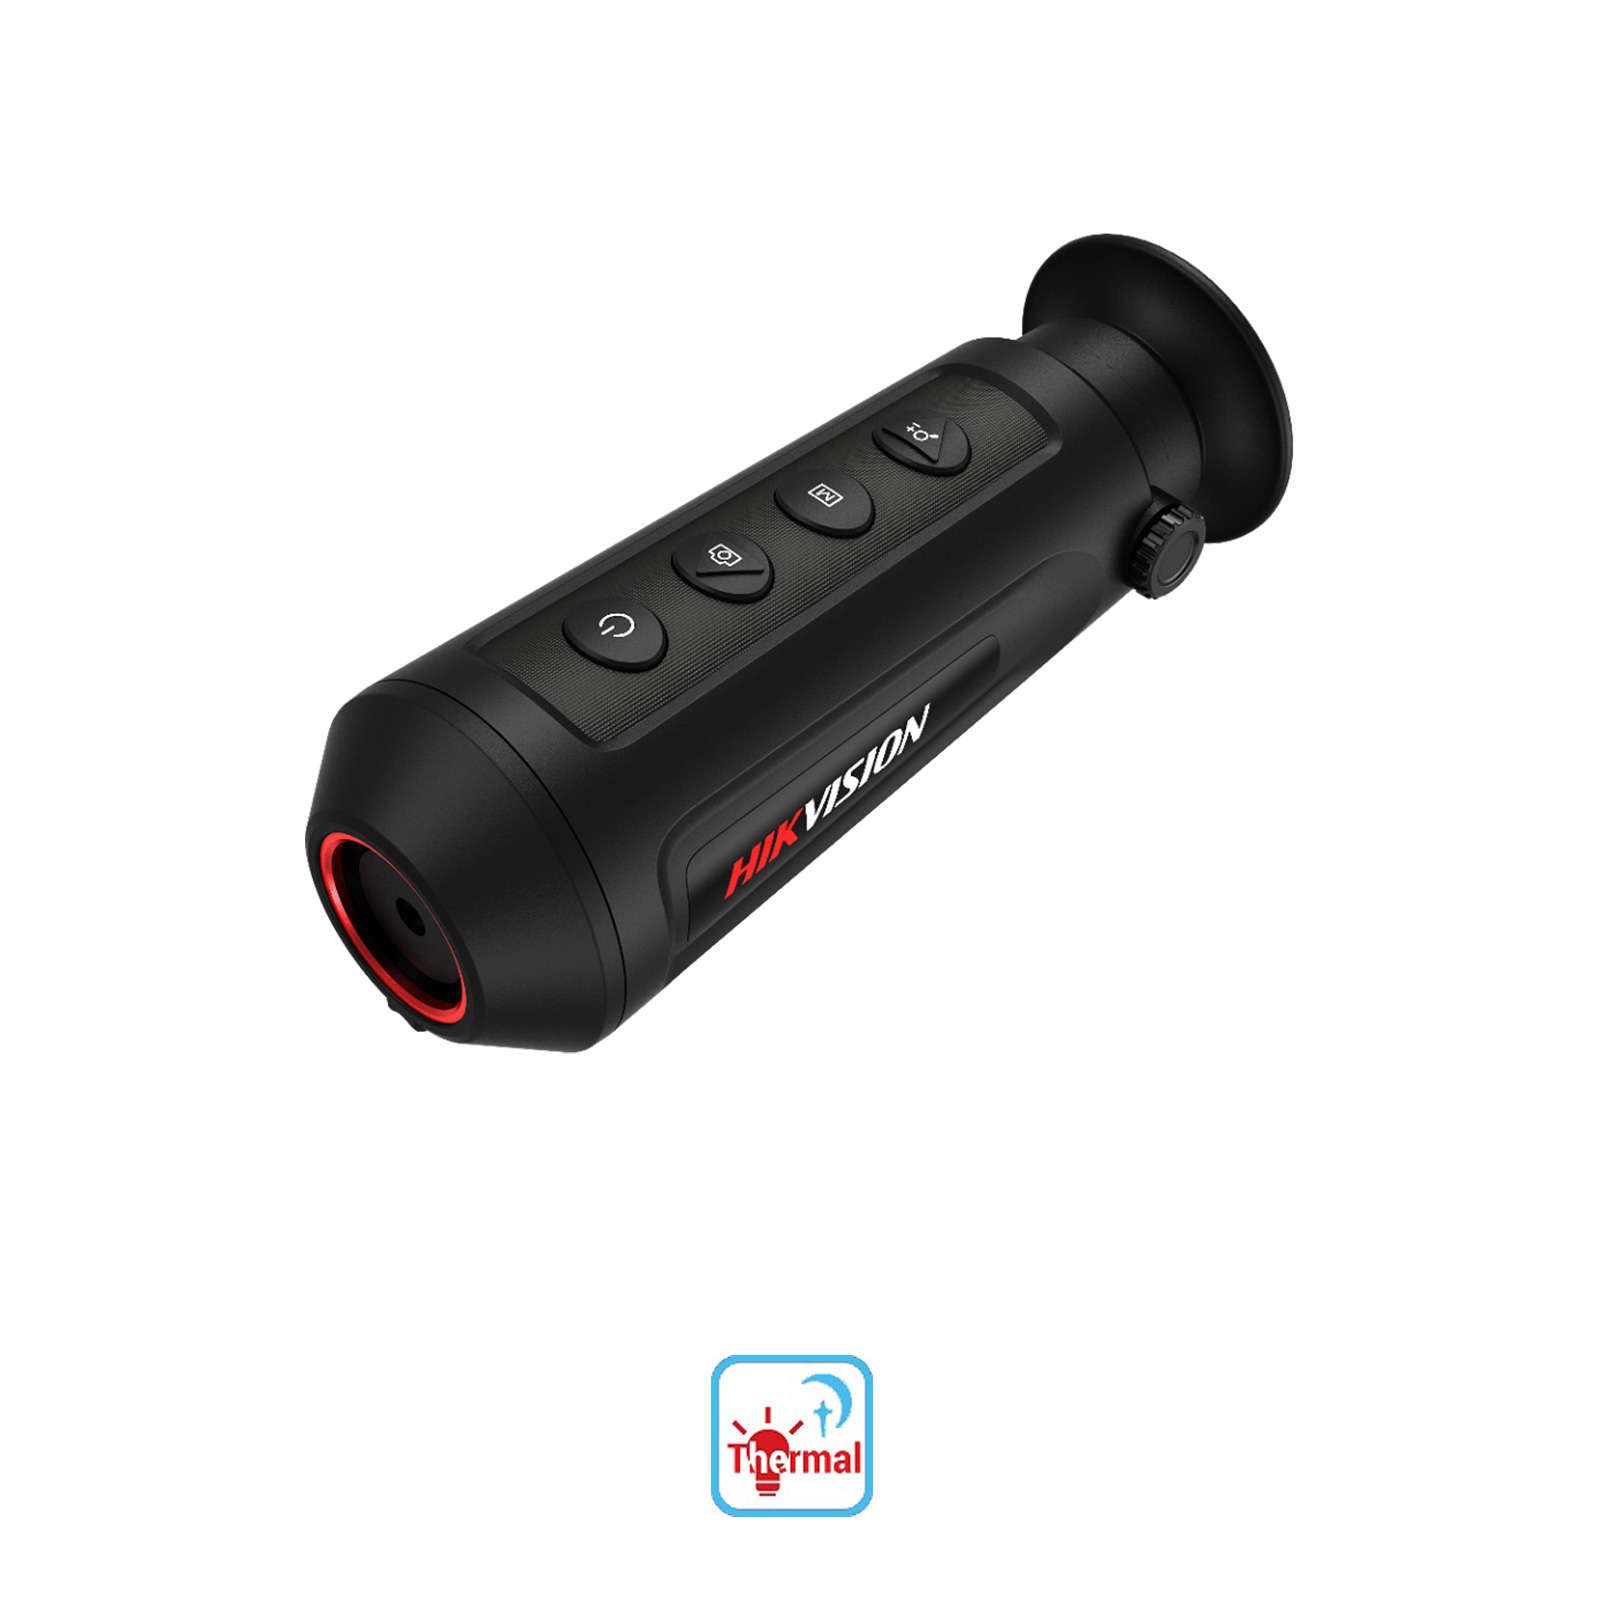 Caméra thermique Hikvision | Portable |Télescope monoculaire